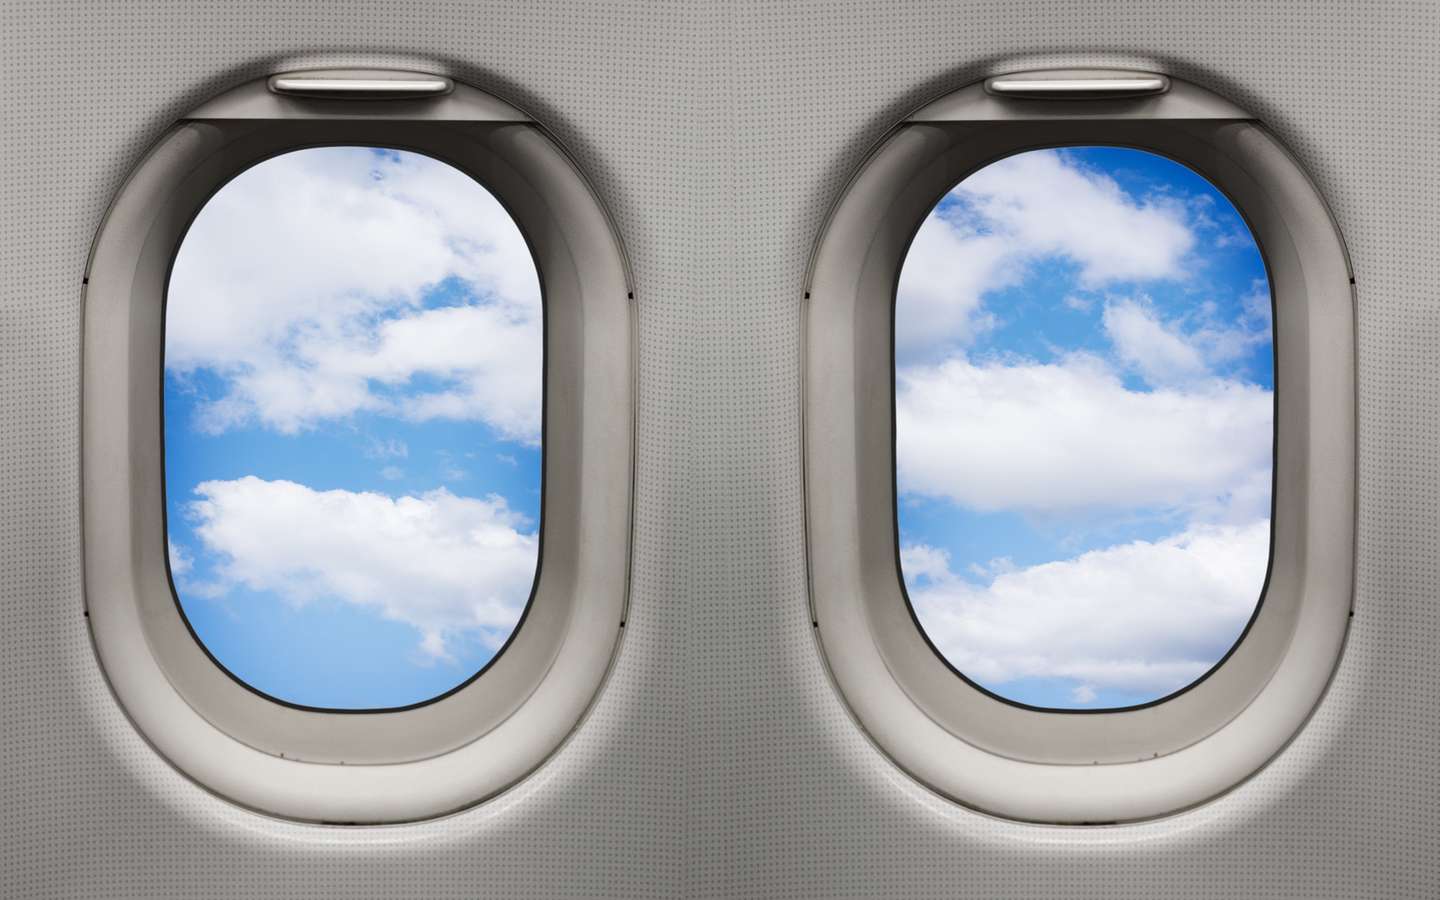 Environnement : l'avion vert a-t-il des chances de voir le jour ?